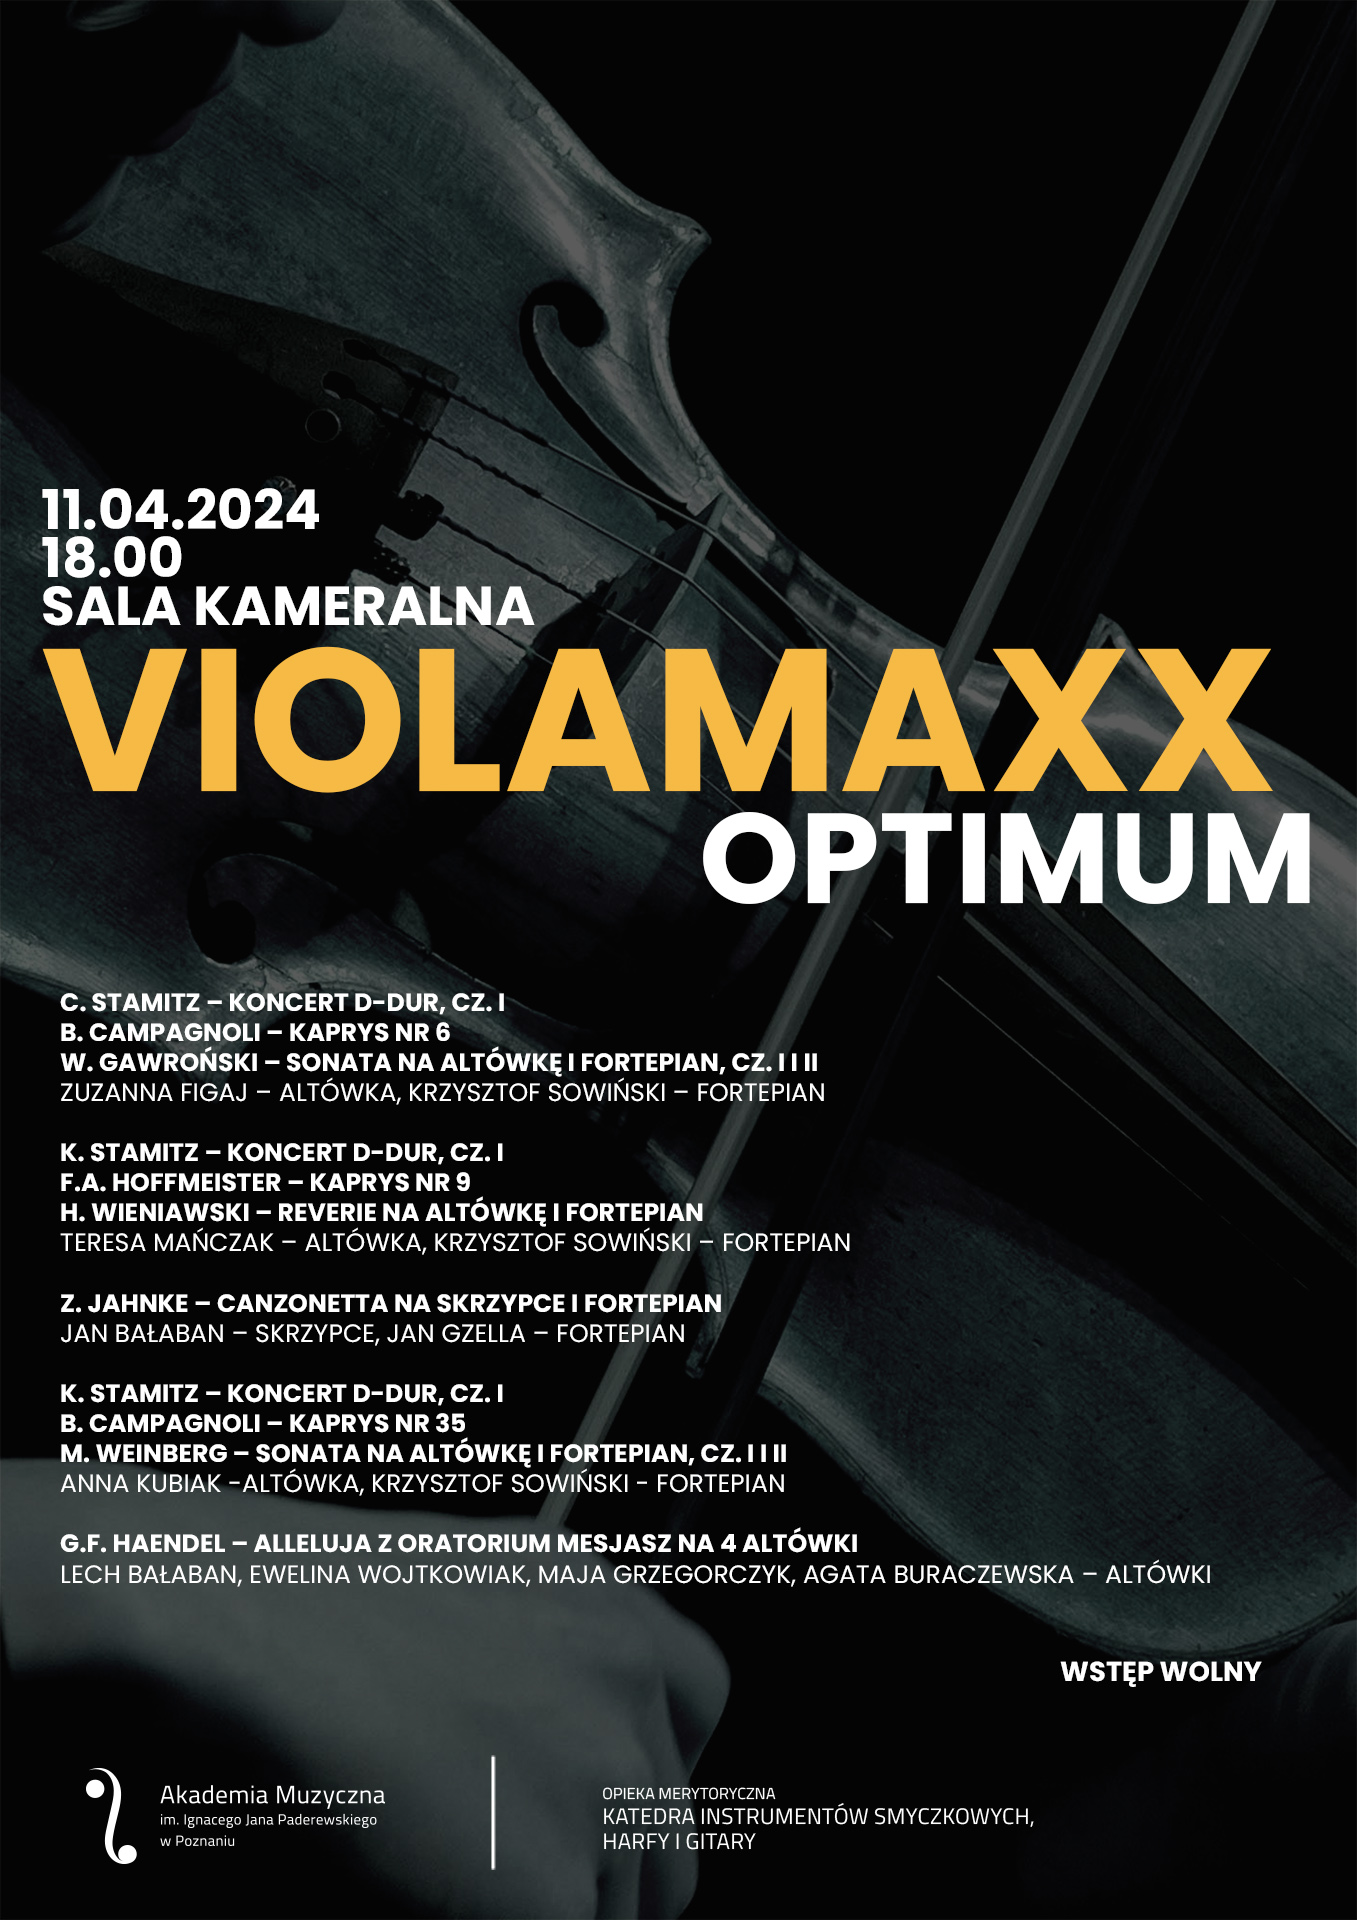 Afisz zawiera informacje na temat koncertu w cyklu VIOLAMAXX - OPTIMUM w dniu 11 kwietnia 2024